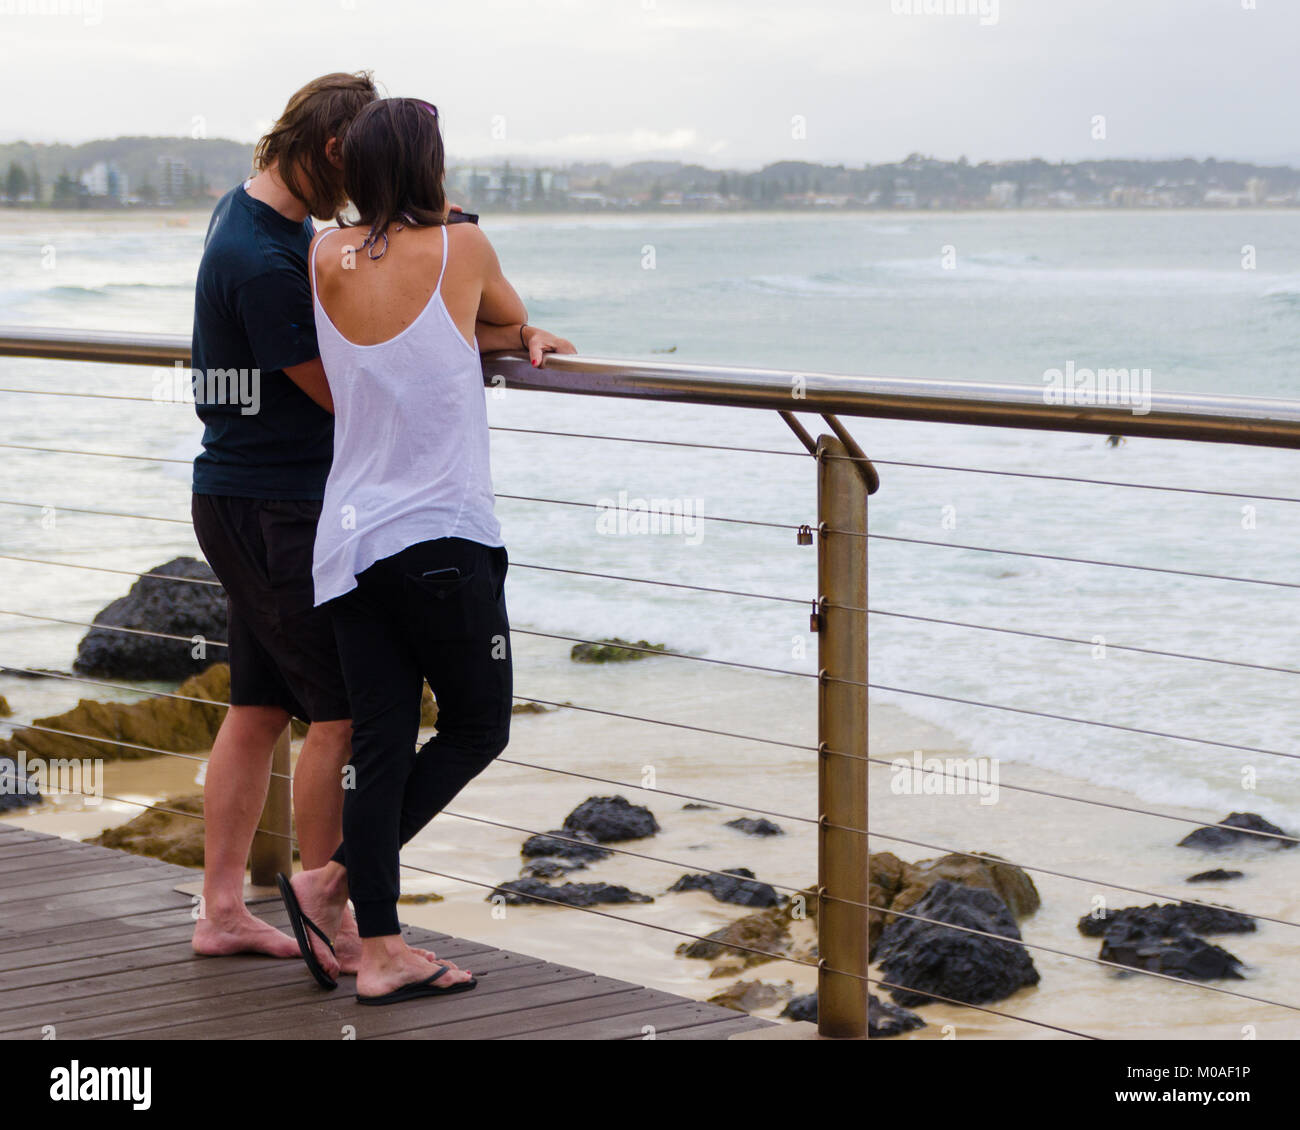 Paar ruhigen Moment genießen Sie gemeinsam am Strand. Touristische lean von Boardwalk Geländer mit Blick auf malerische Seenlandschaft. Stockfoto